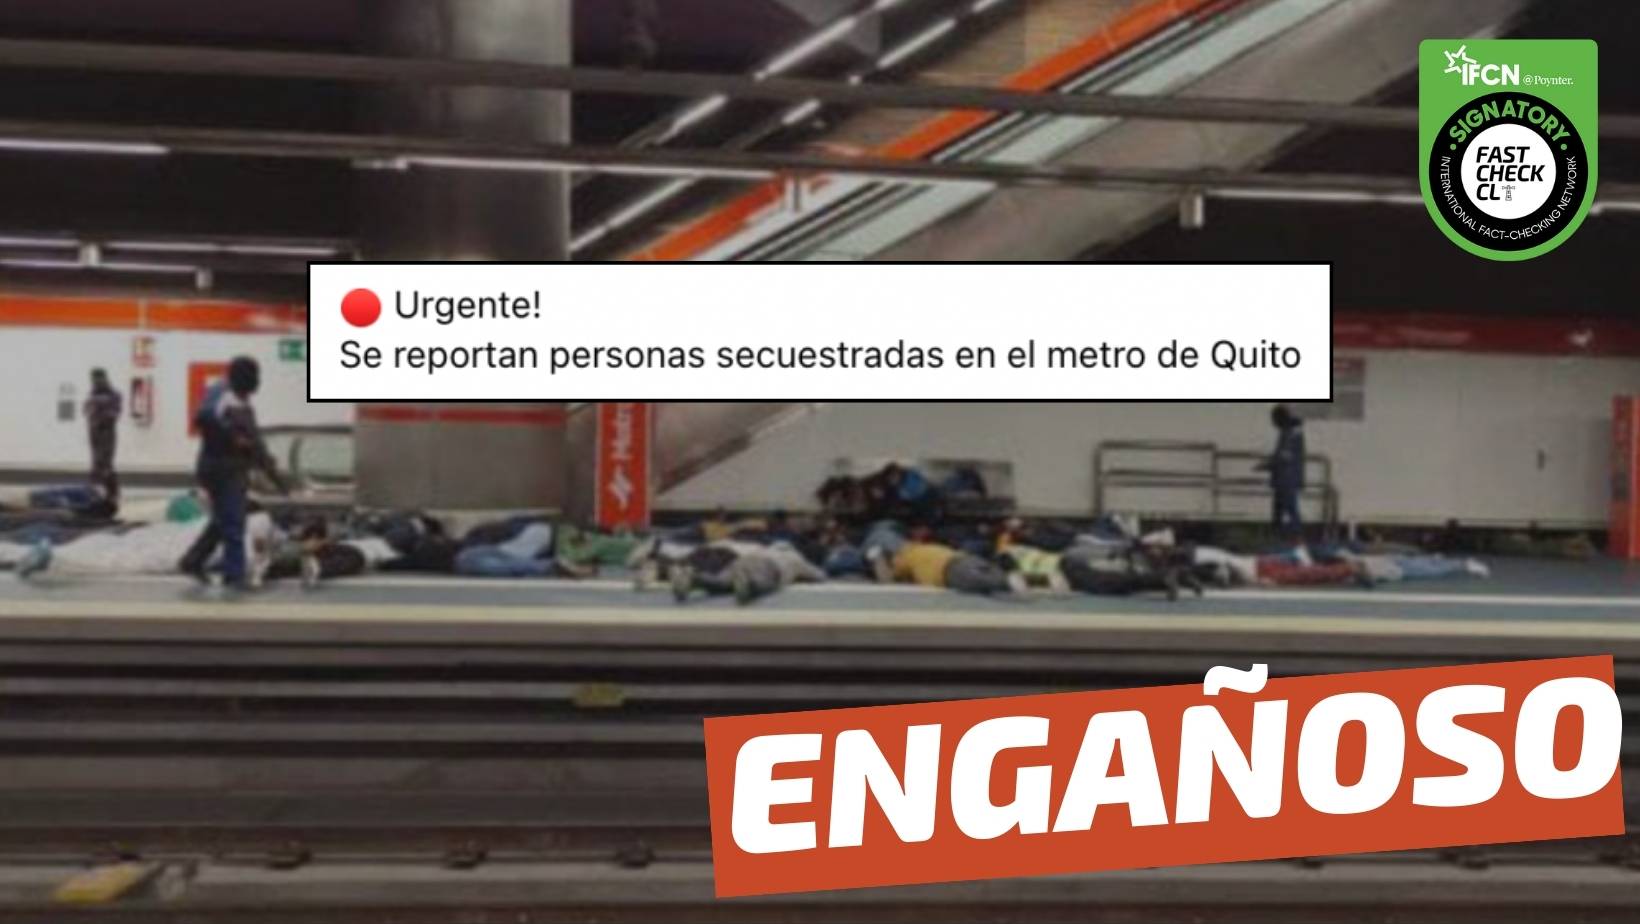 You are currently viewing (Imagen) “Se reportan personas secuestradas en el metro de Quito”: #Engañoso